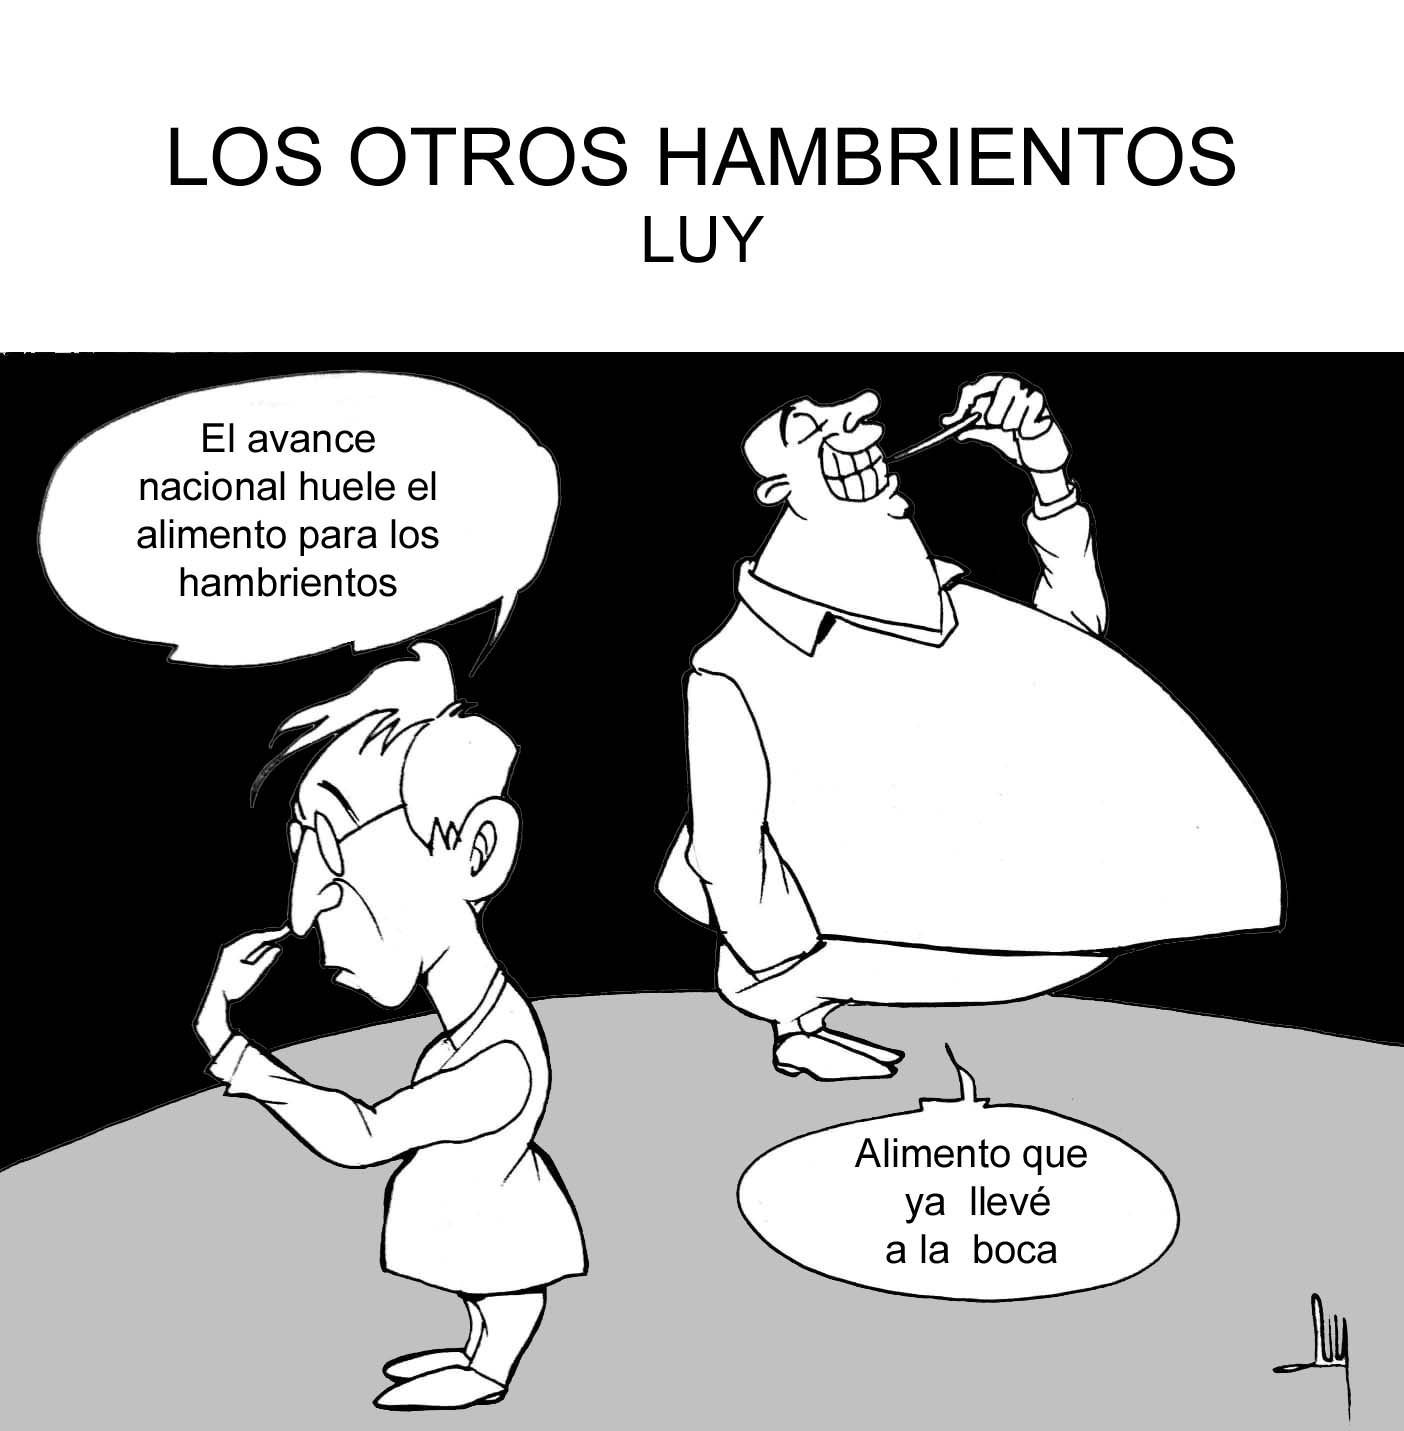 LOS OTROS HAMBRIENTOS-LUY